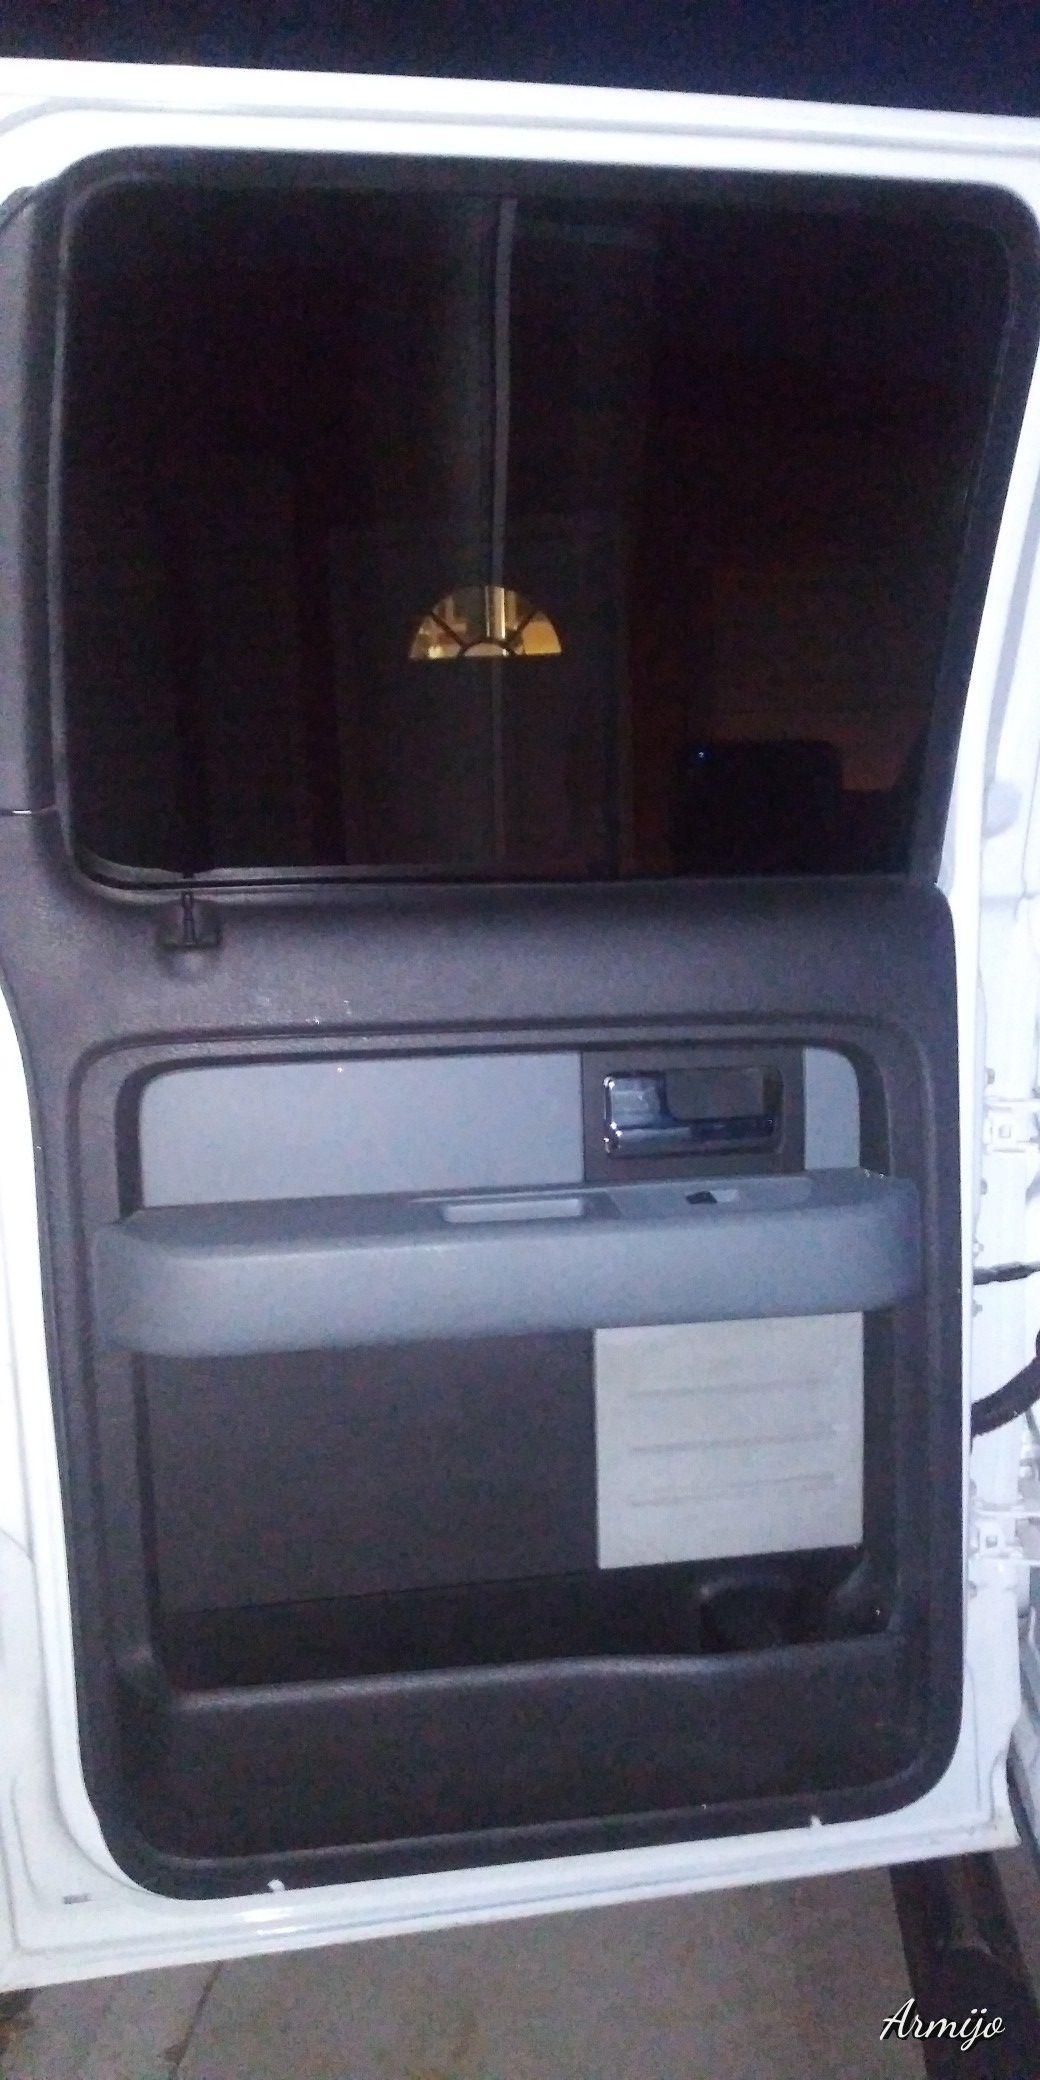 2012 Ford extended crew cab left side door panel & glass w/ track, lock & door handle.